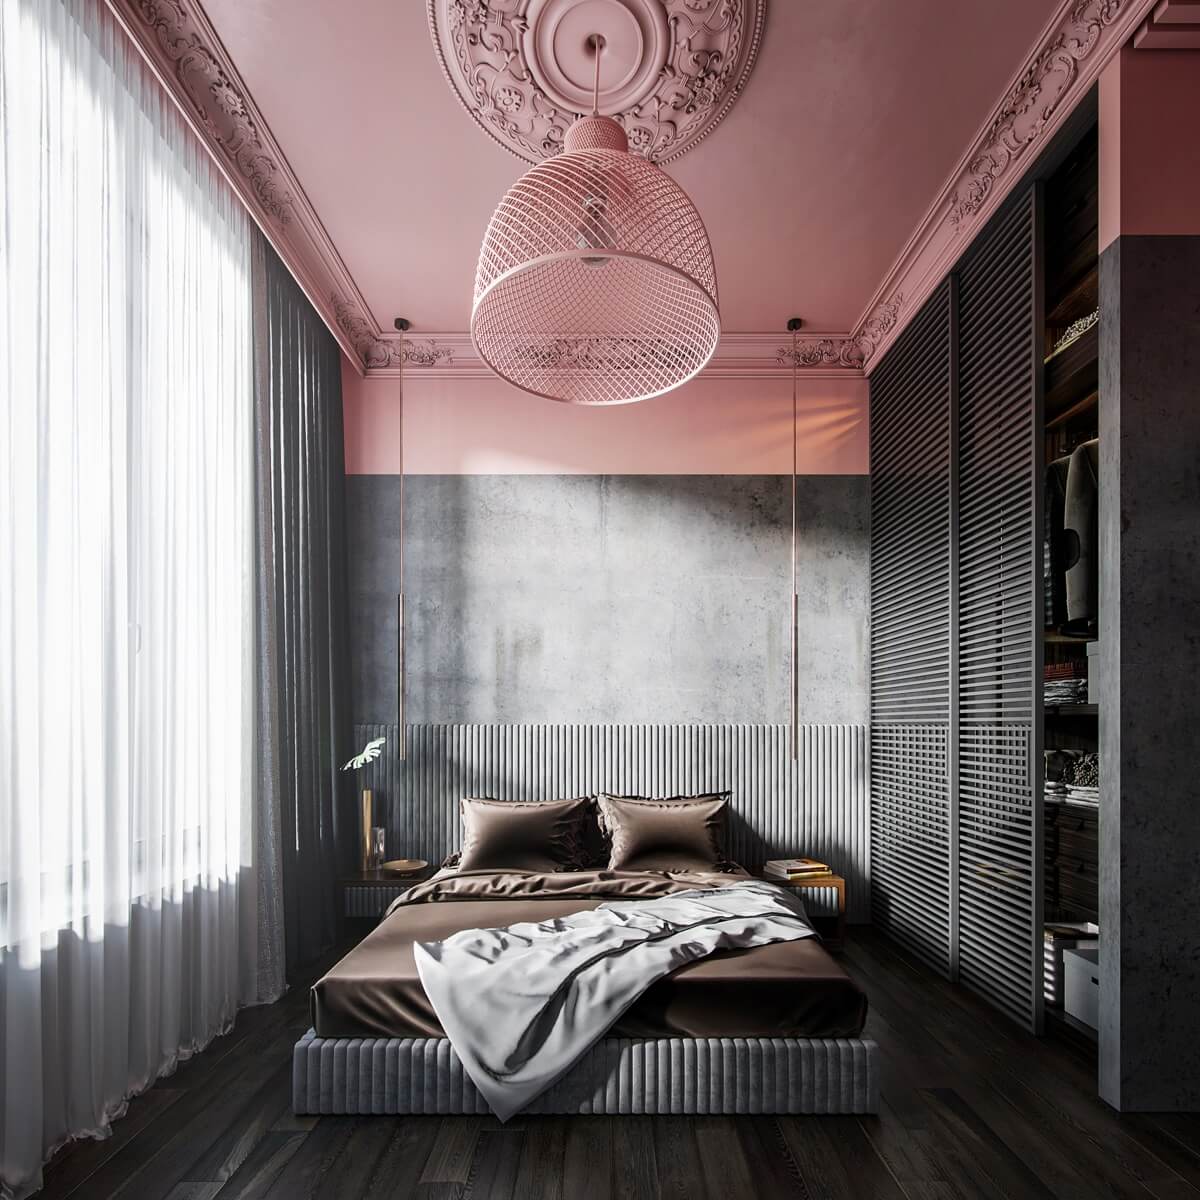 Mẫu phòng ngủ màu hồng xám cũng là sự lựa chọn thông minh tạo không gian hài hòa nổi bật